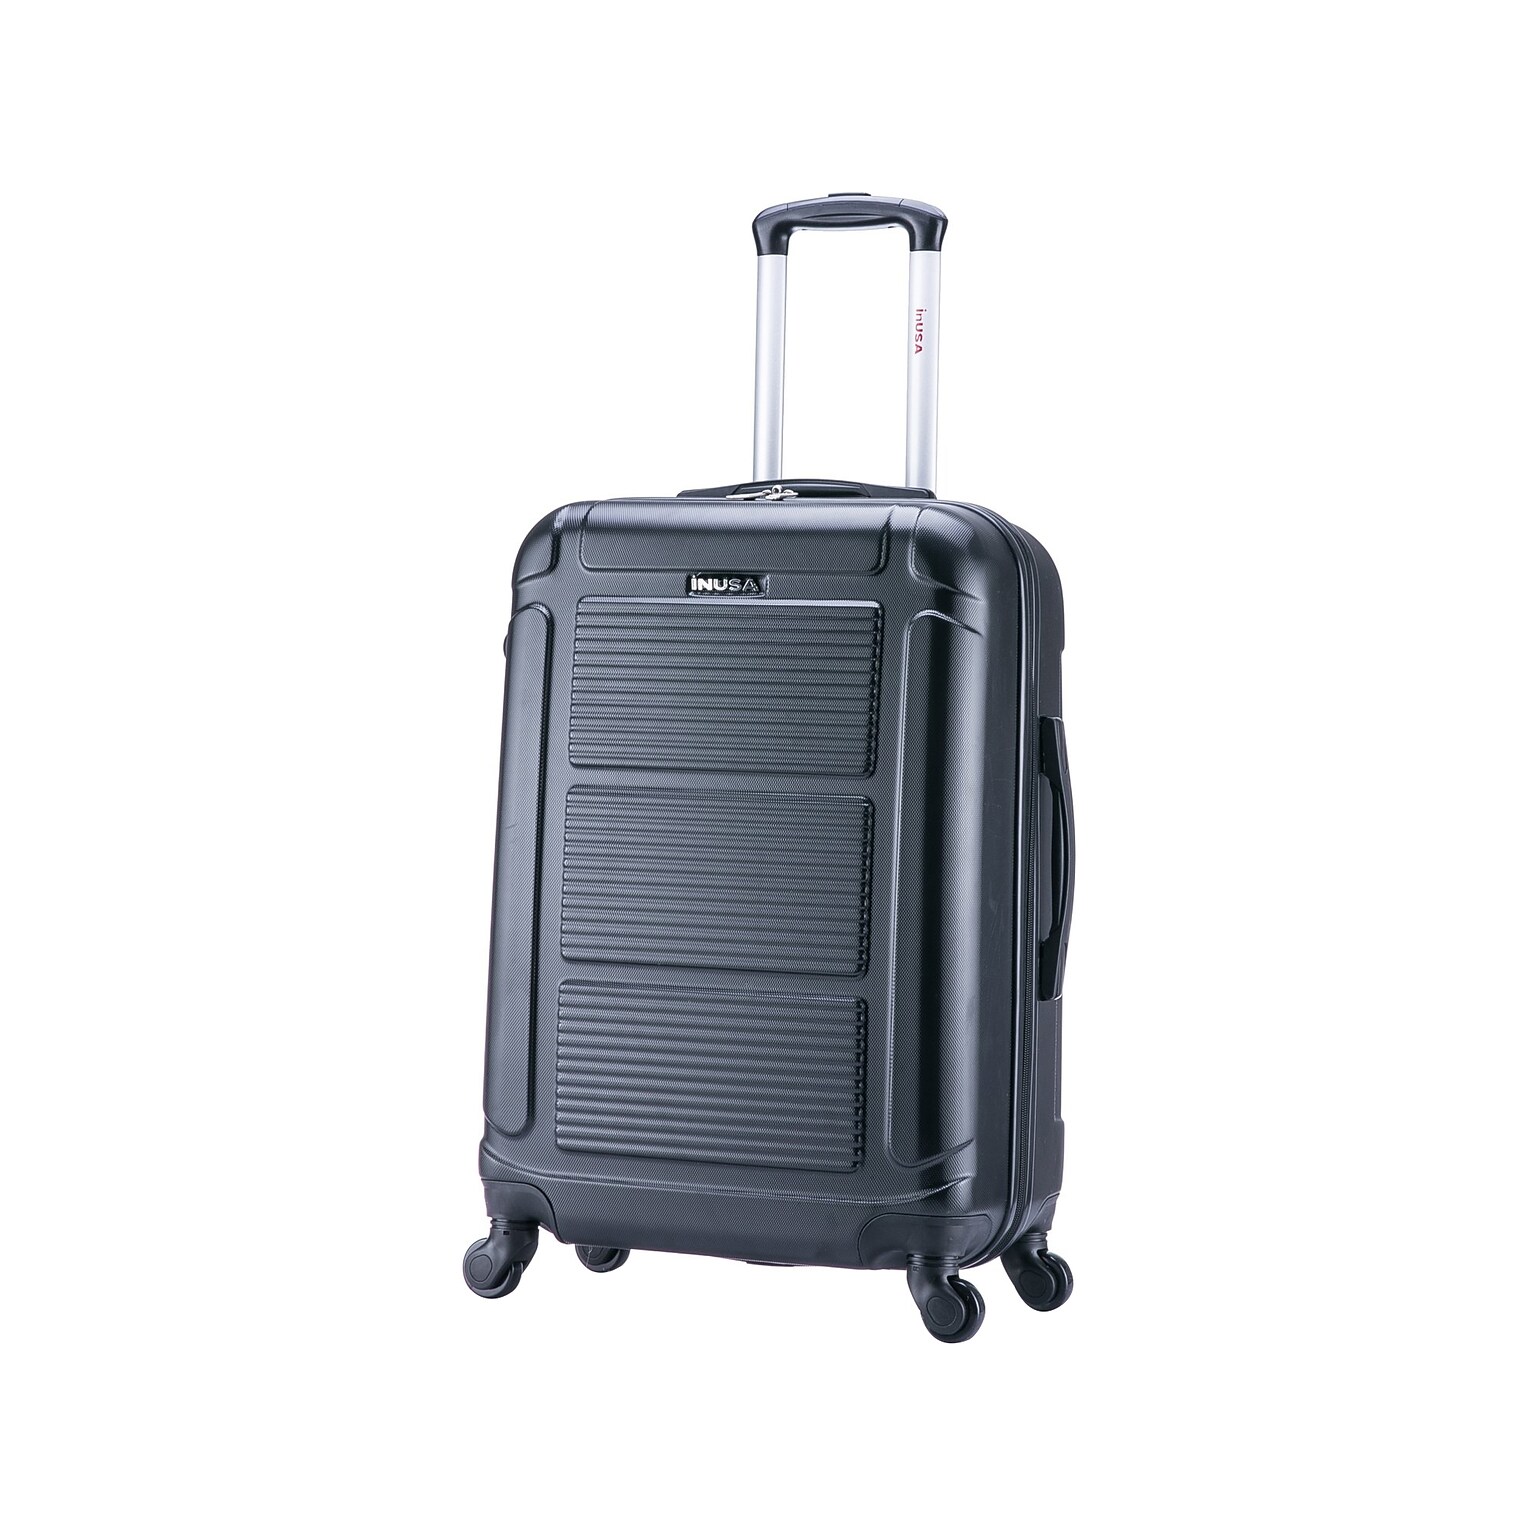 InUSA Pilot 24 Hardside Suitcase, 4-Wheeled Spinner, Black (IUPIL00M-COA)